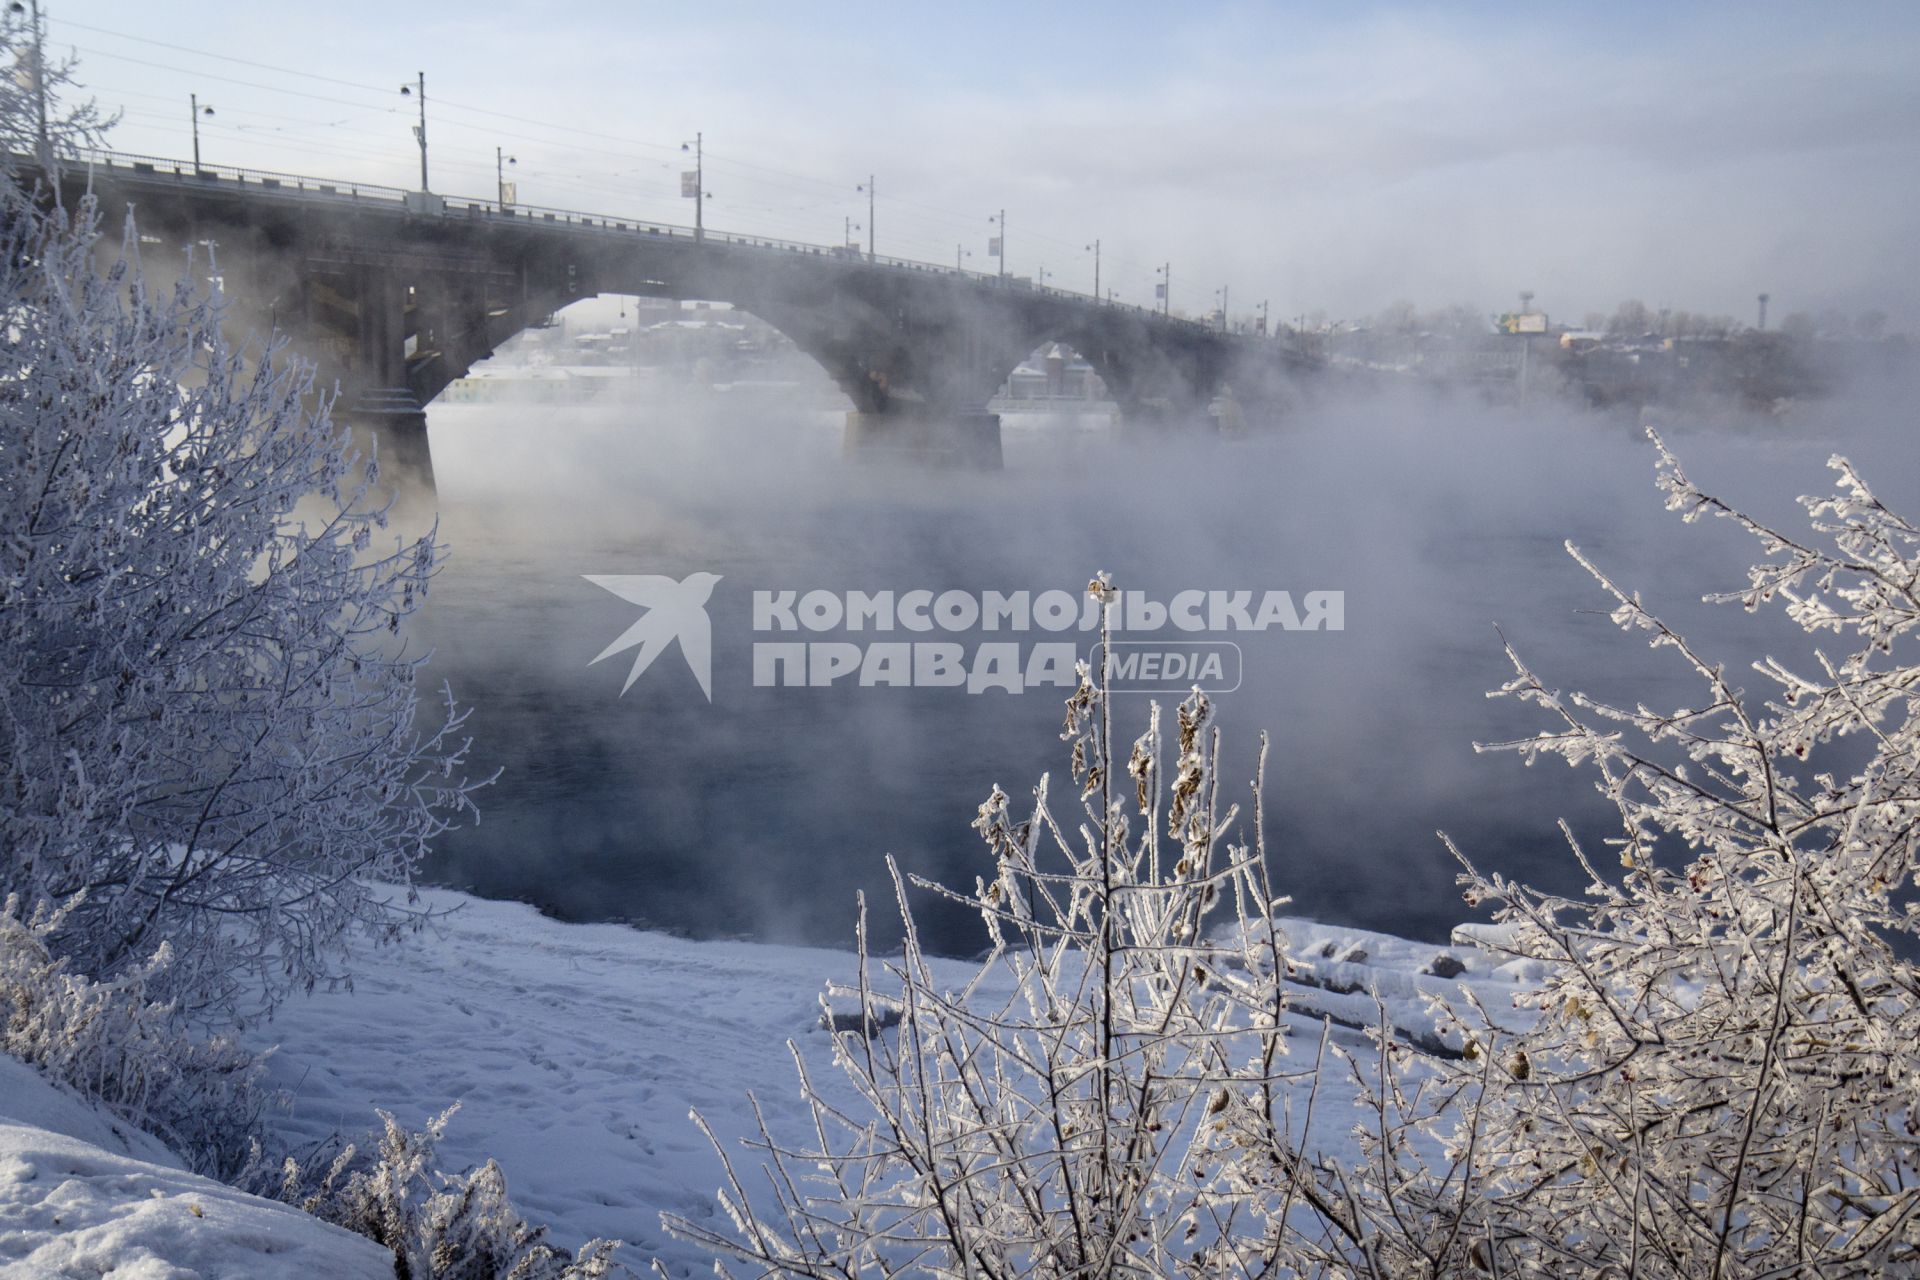 Иркутск. Река Ангара в районе Иркутска не замерзает даже в сильные морозы.